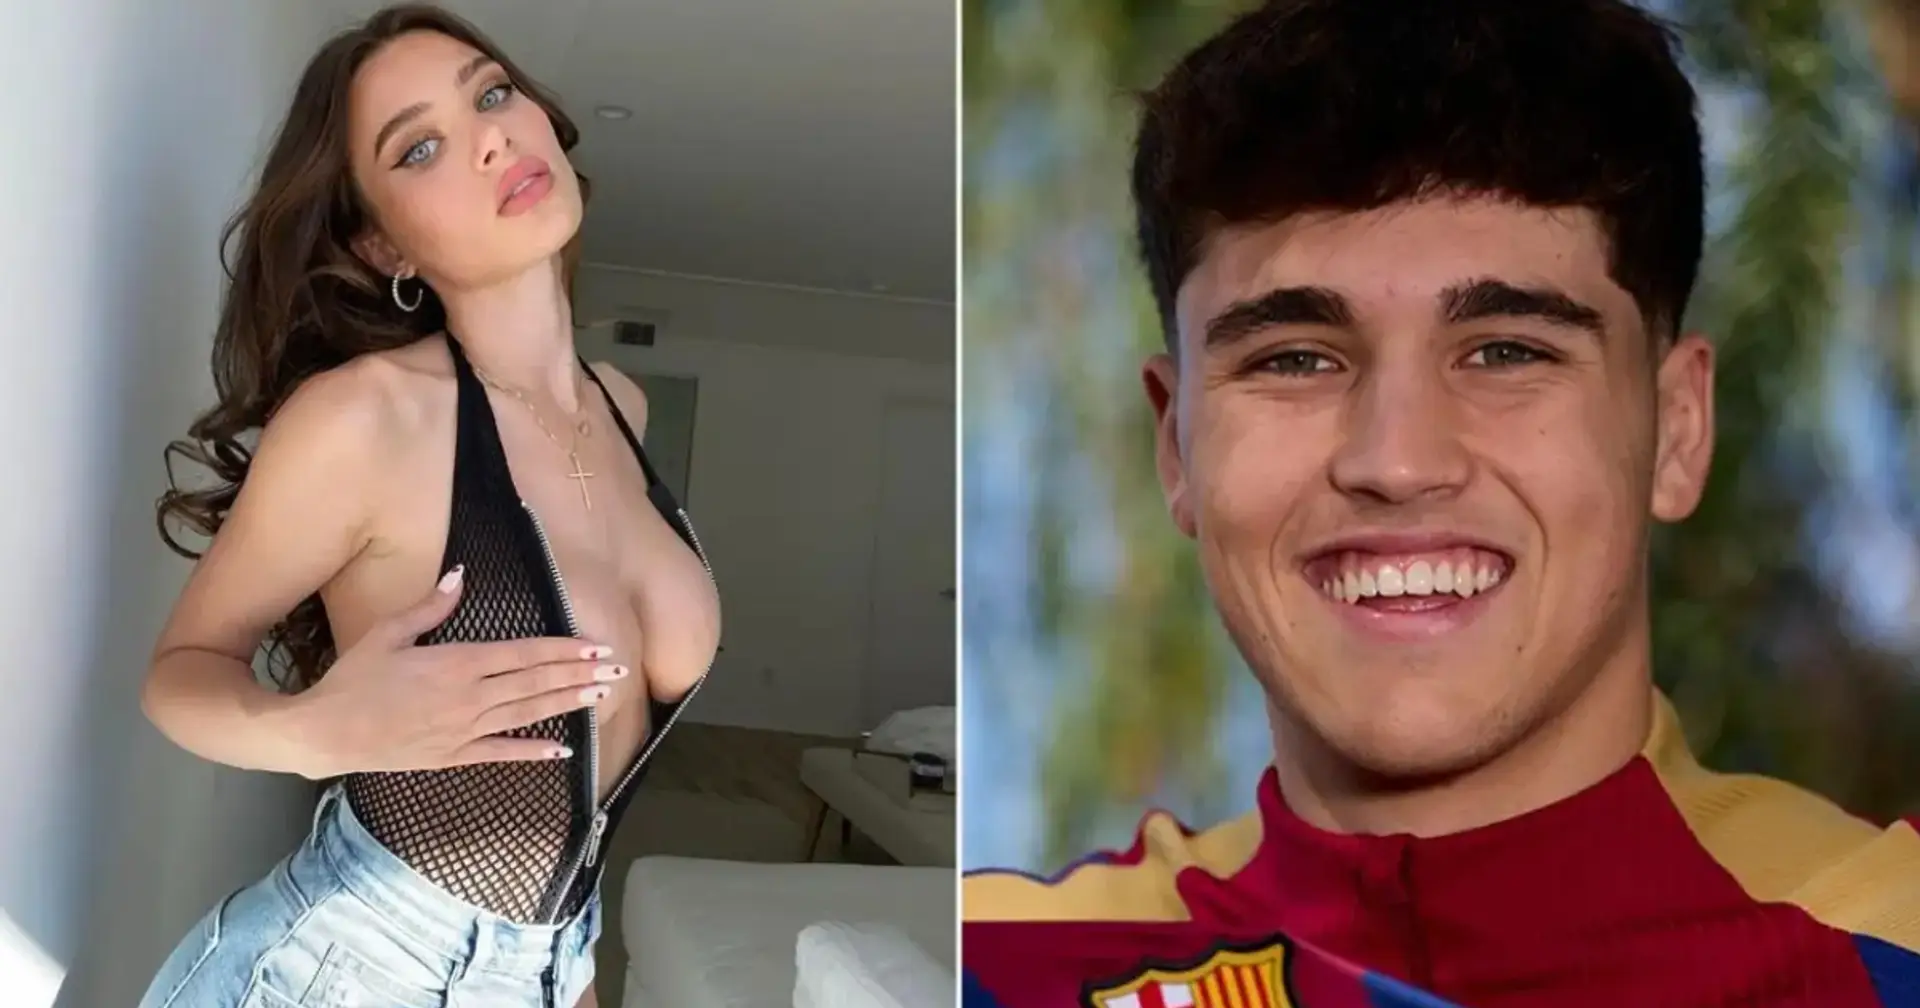 Der 17-jährige Barça-Verteidiger Cubarsi likte absolut alle Beiträge des Pornostars Lana Rhoades: Als die Fans das bemerkten, hat er sie sofort gelöscht